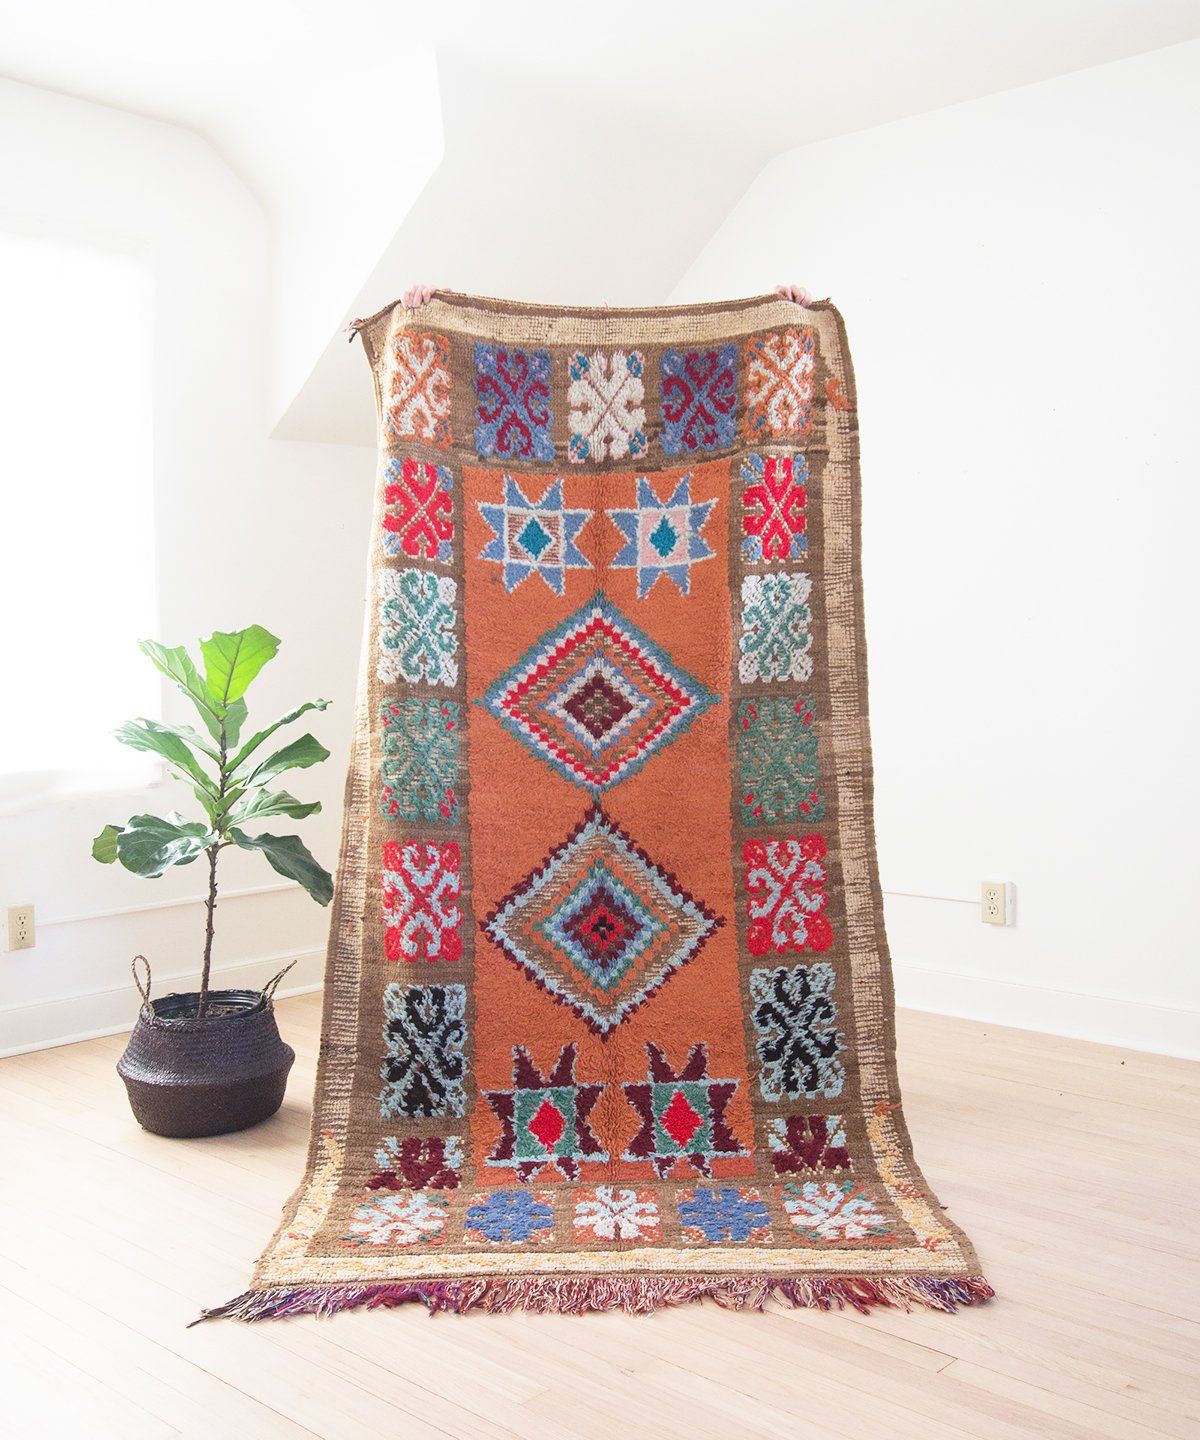 Handmade rug Oushak rug 2.9 x 6.1 ft Home decor Vintage rug Green area rug Wool rug No 8375 Organic wool rug Bedroom rug Turkish rug